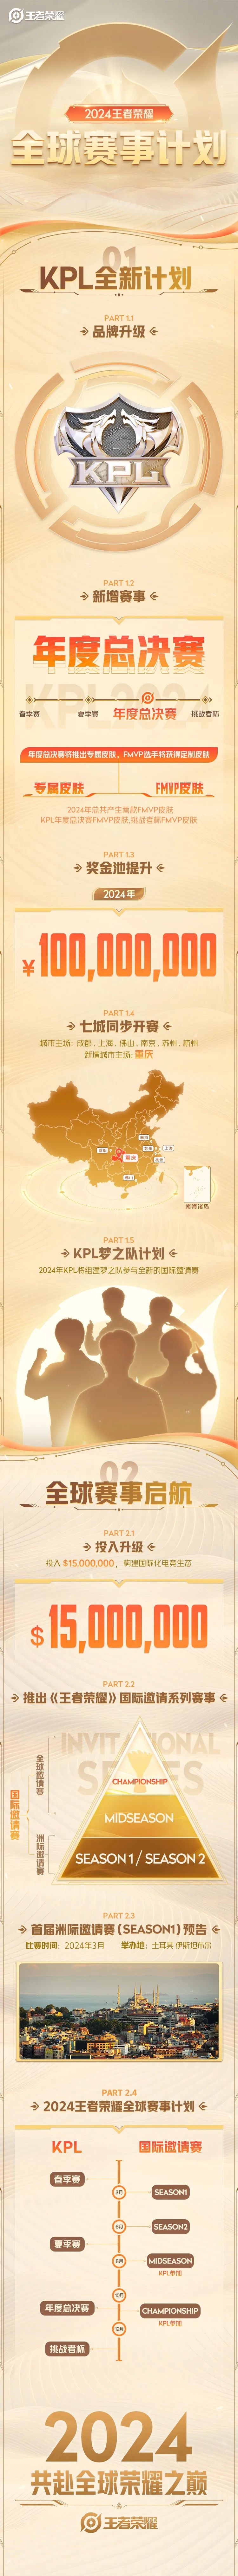 《王者光华》新增KPL年度总决赛 总奖金池达1亿元